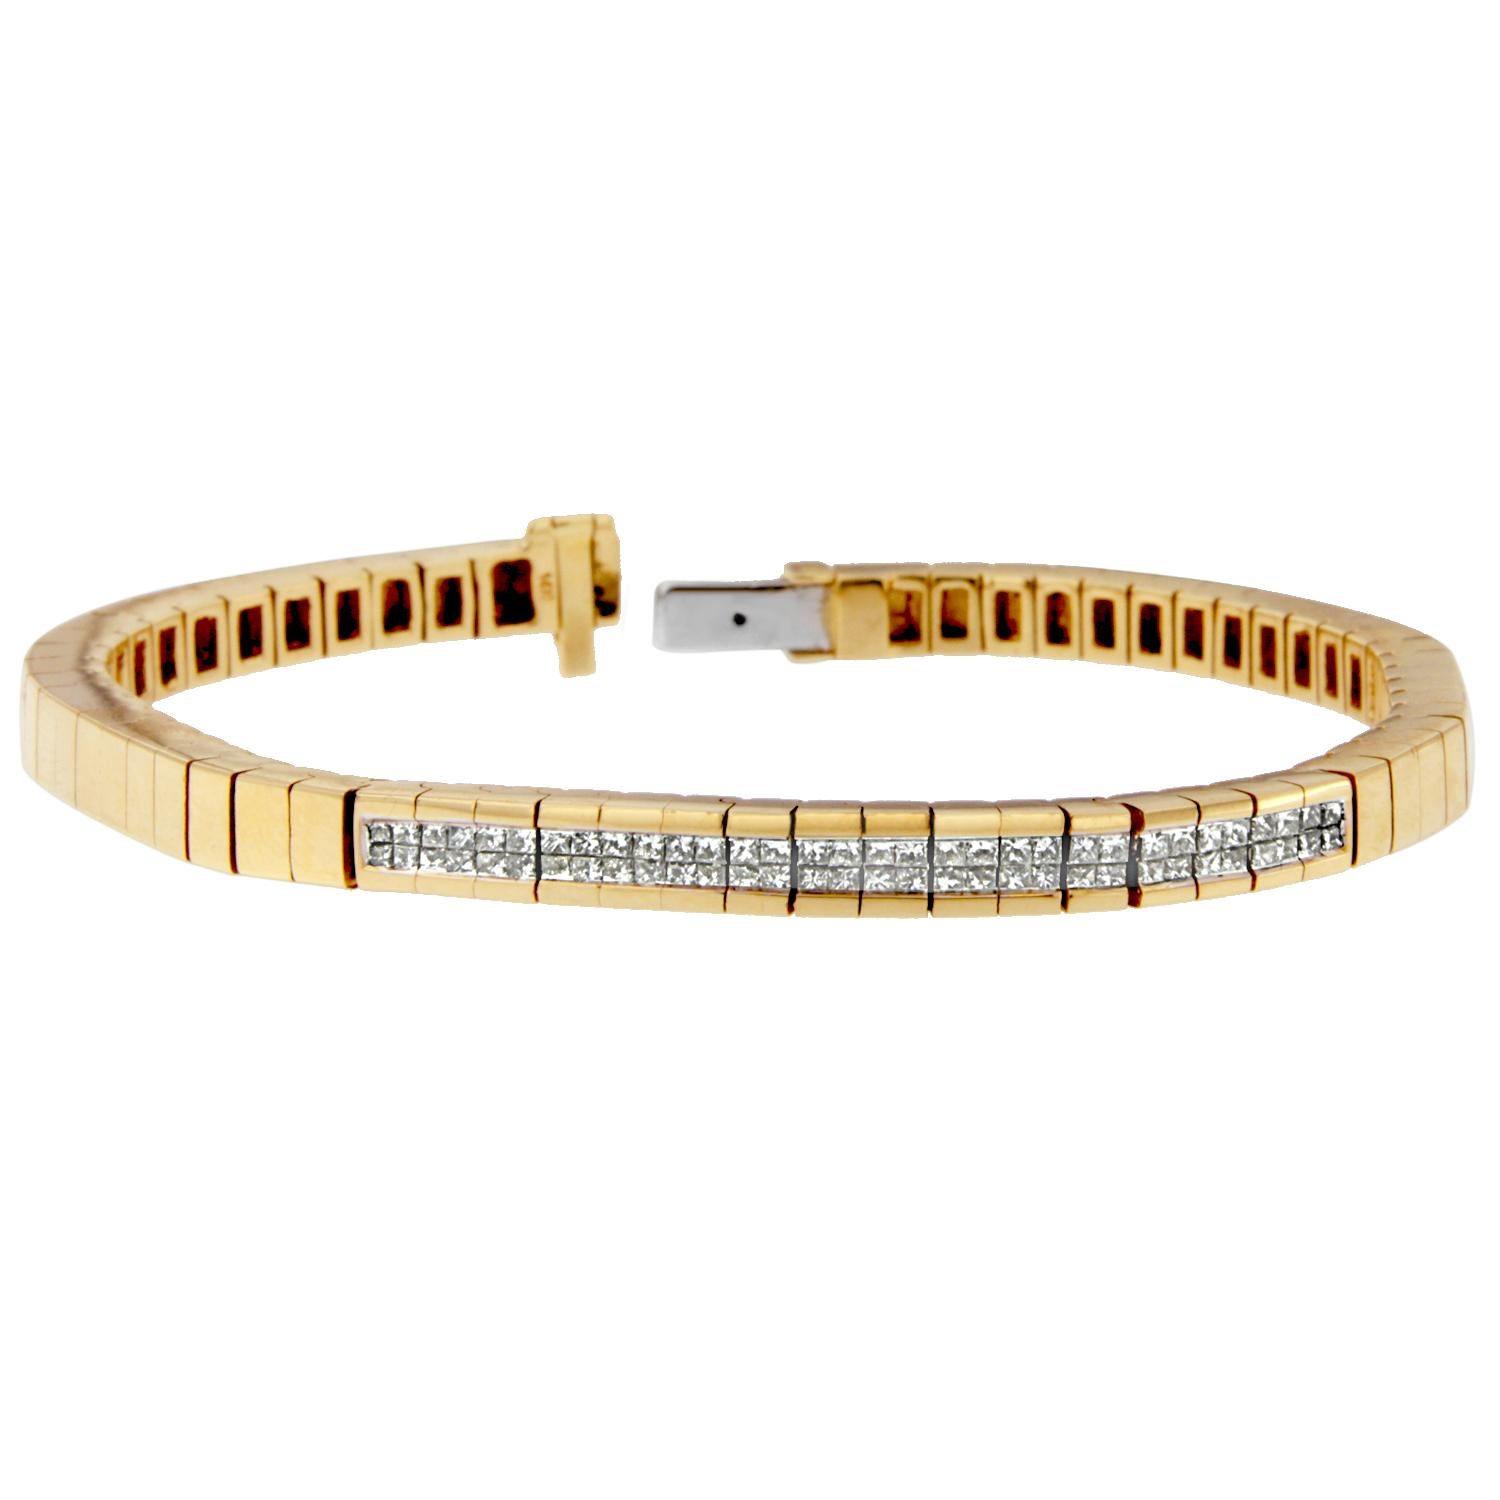 Was kann eleganter sein als dieses stilvolle Diamantarmband mit Band? Ein wunderschönes Ornament aus reichhaltigem 14-karätigem Gelbgold, das mit funkelnden Diamanten im Prinzessinnenschliff verziert ist. Außerdem verleihen die Unterbrechungen in